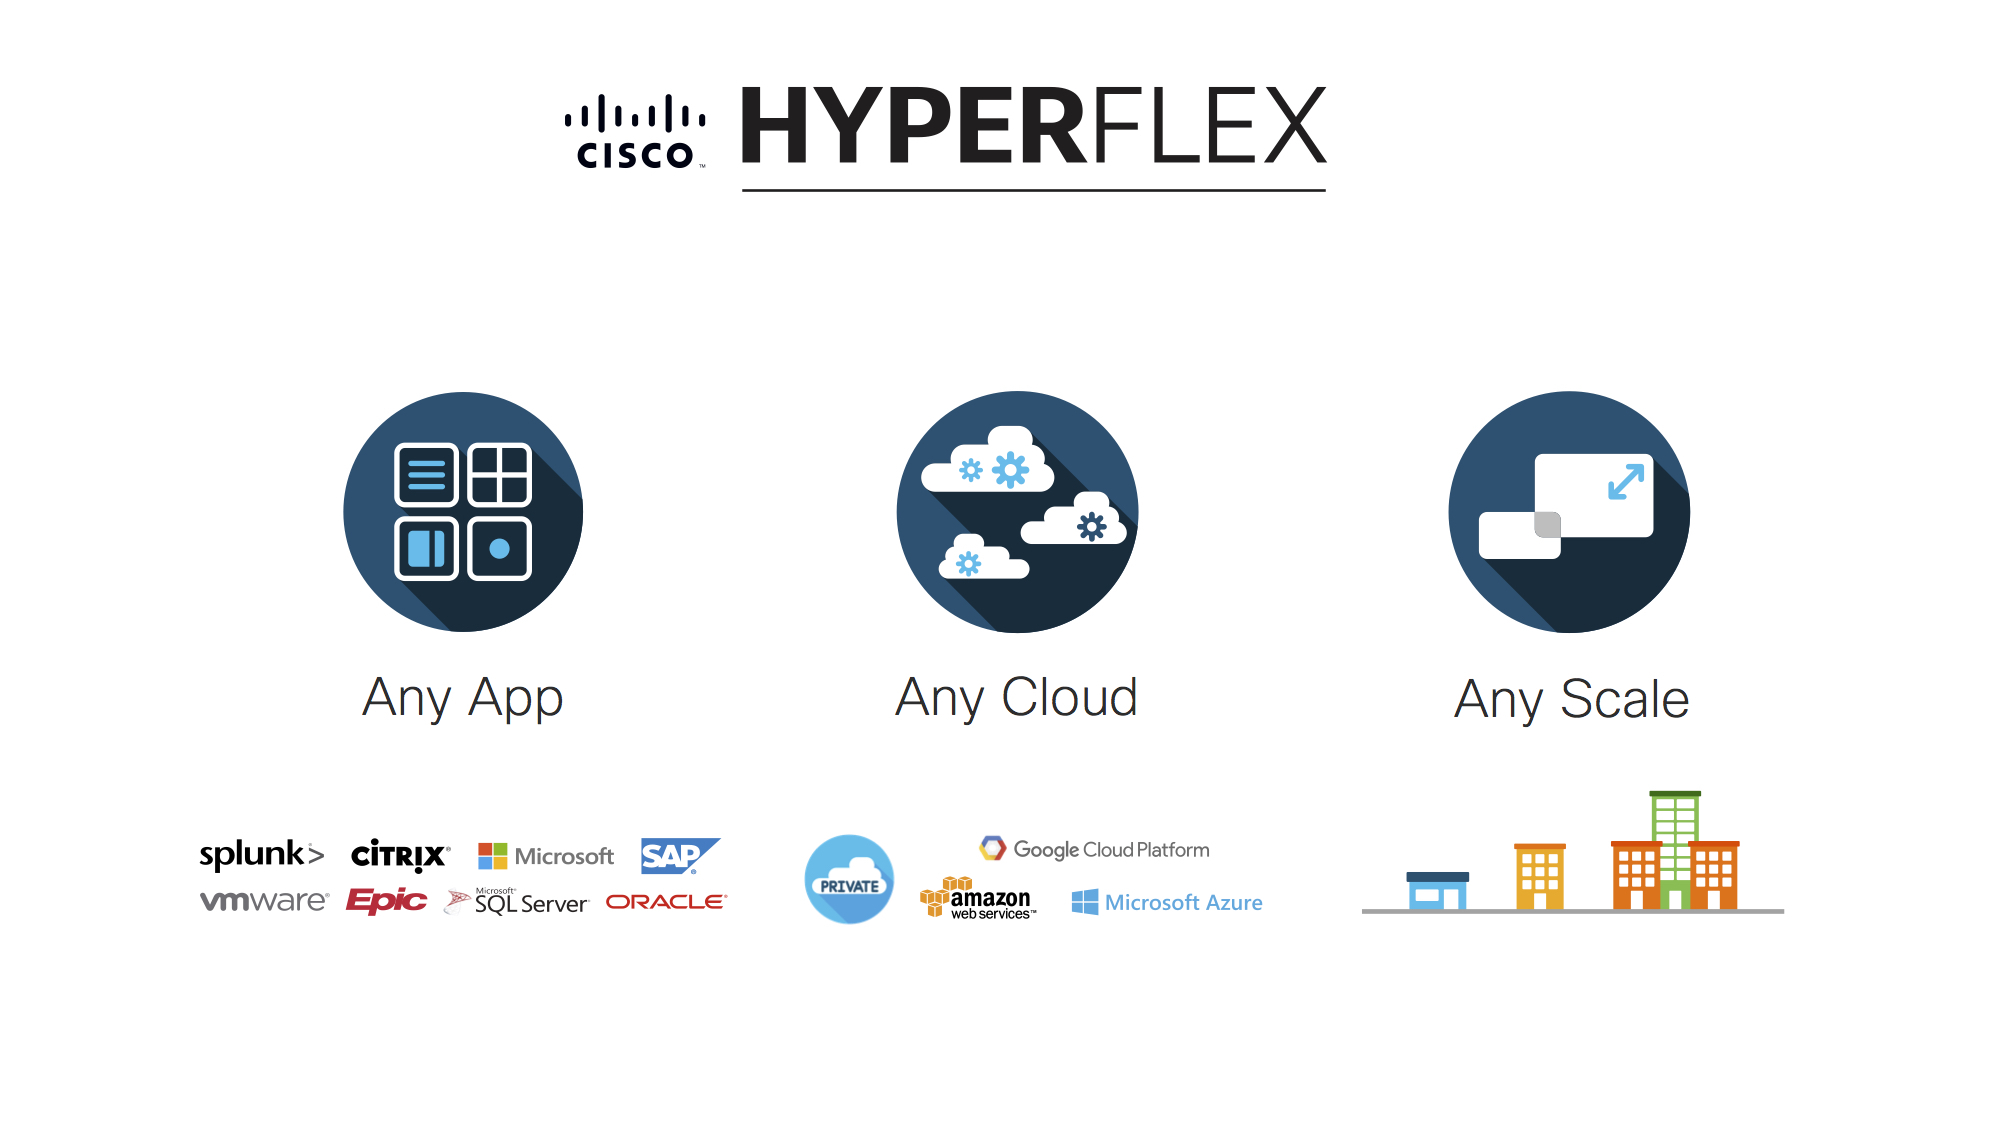 Cisco HyperFlex